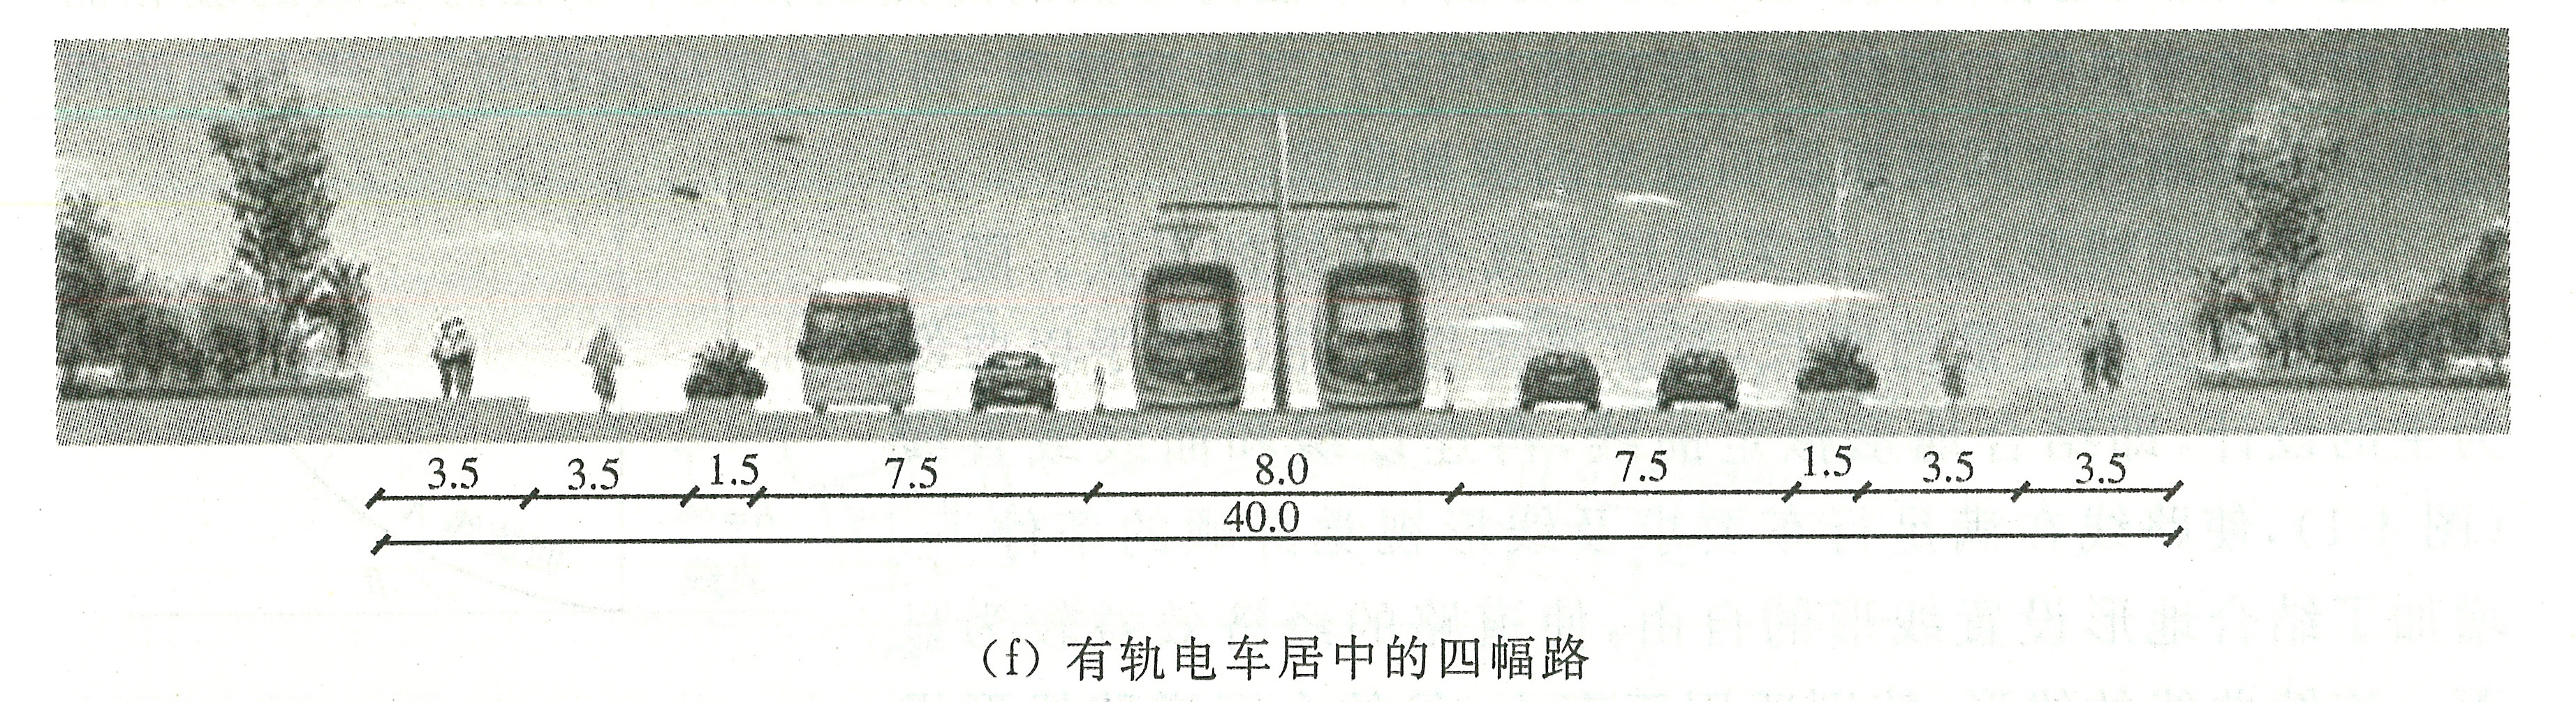 图3-16设有有轨电车的横断面实例5.jpg